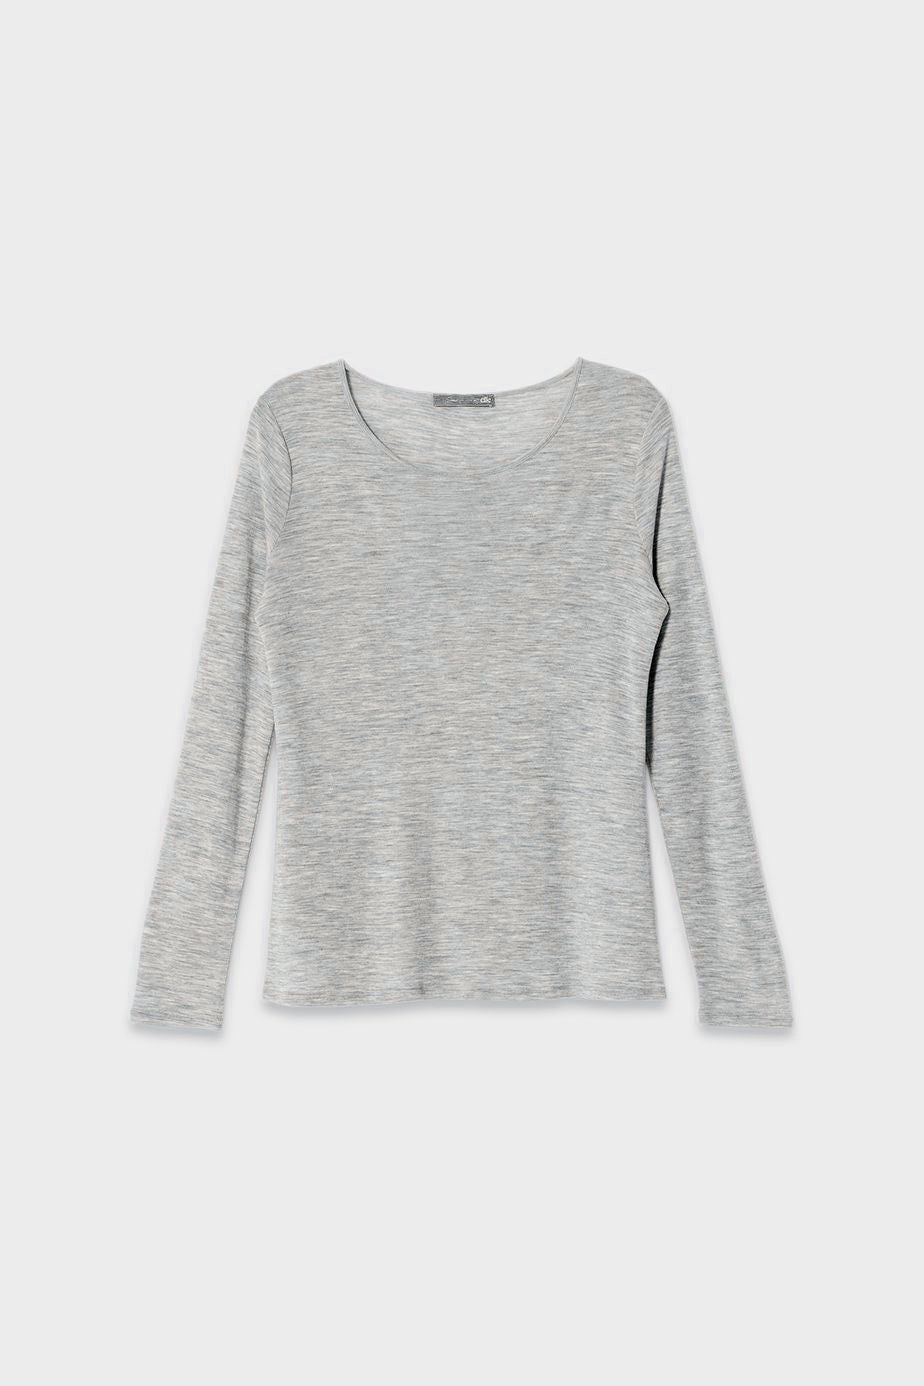 Merino Wool Long Sleeve Skin Top Front | Grey